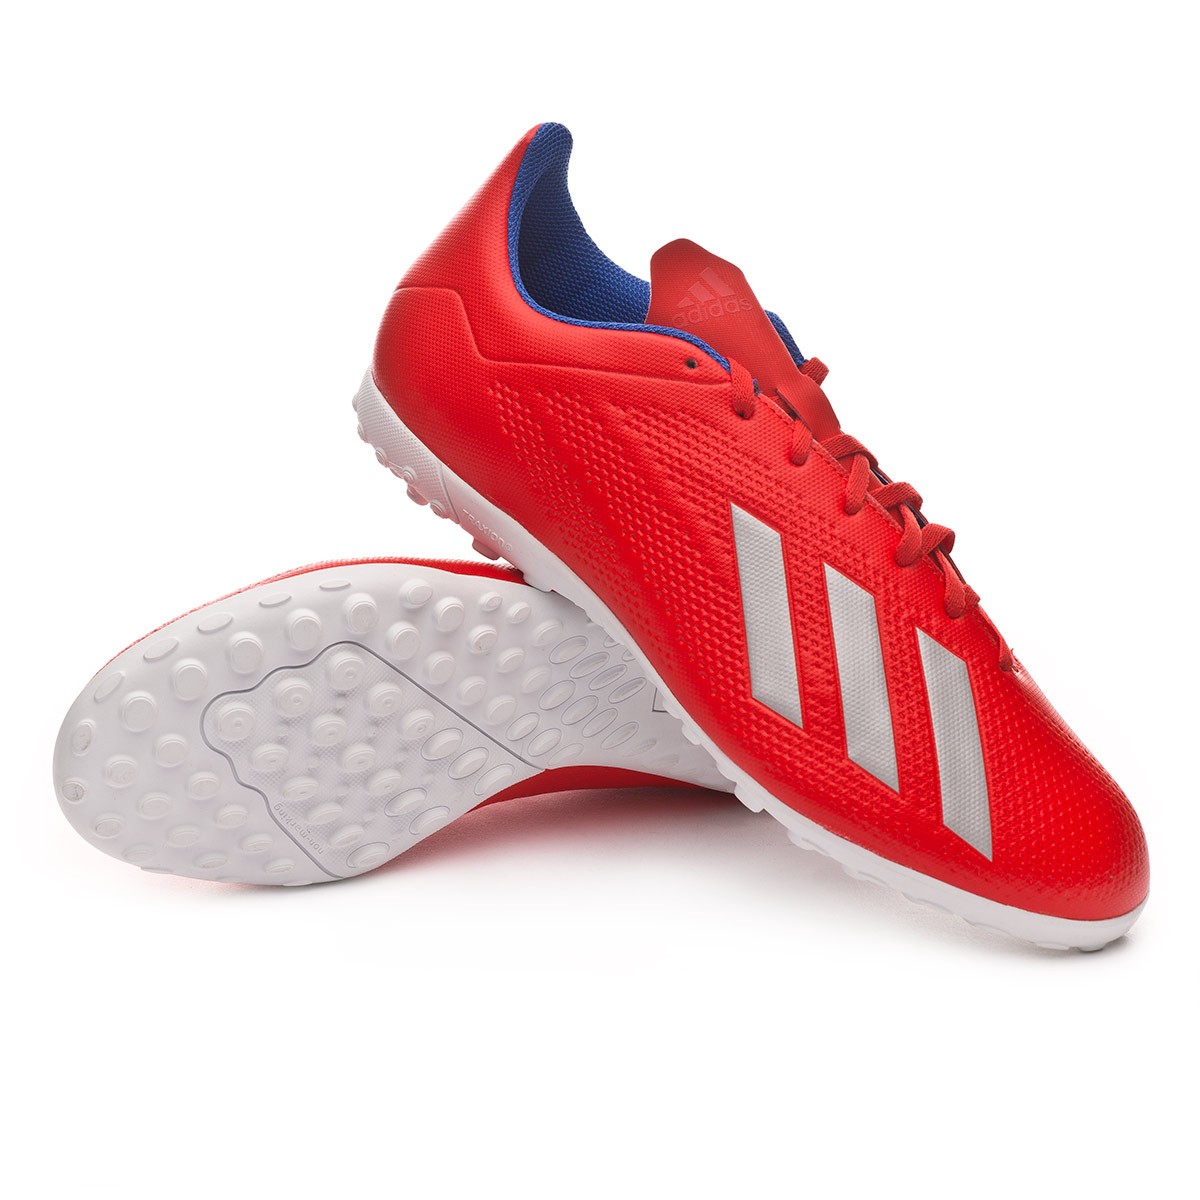 Football Boot adidas X Tango 18.4 Turf 